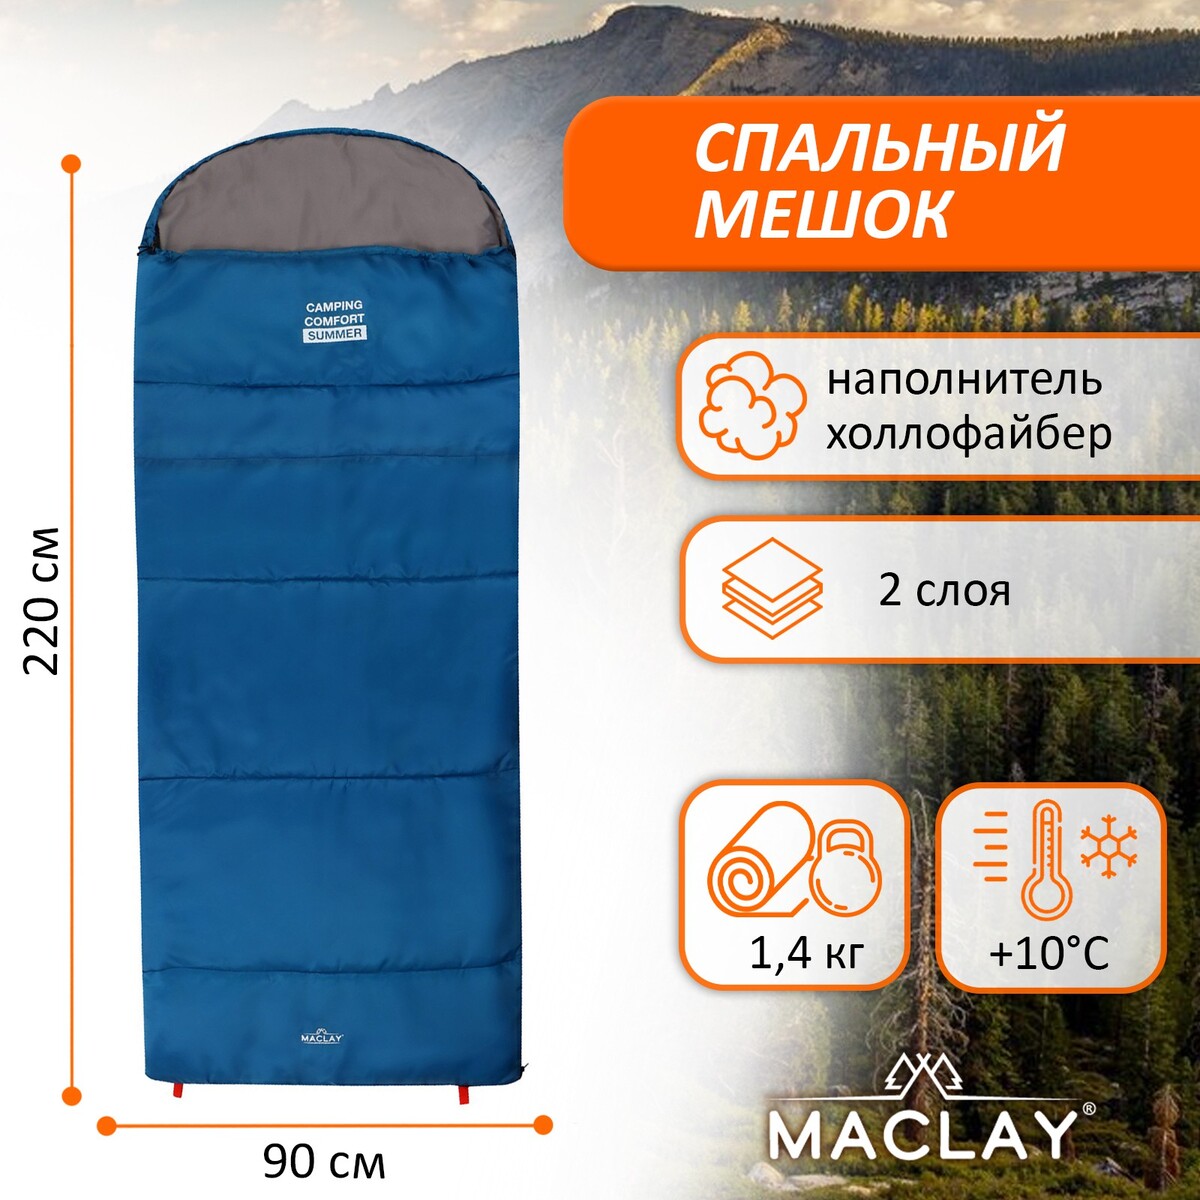   maclay camping comfort summer, , 2 , , 22090 , +10/+25 